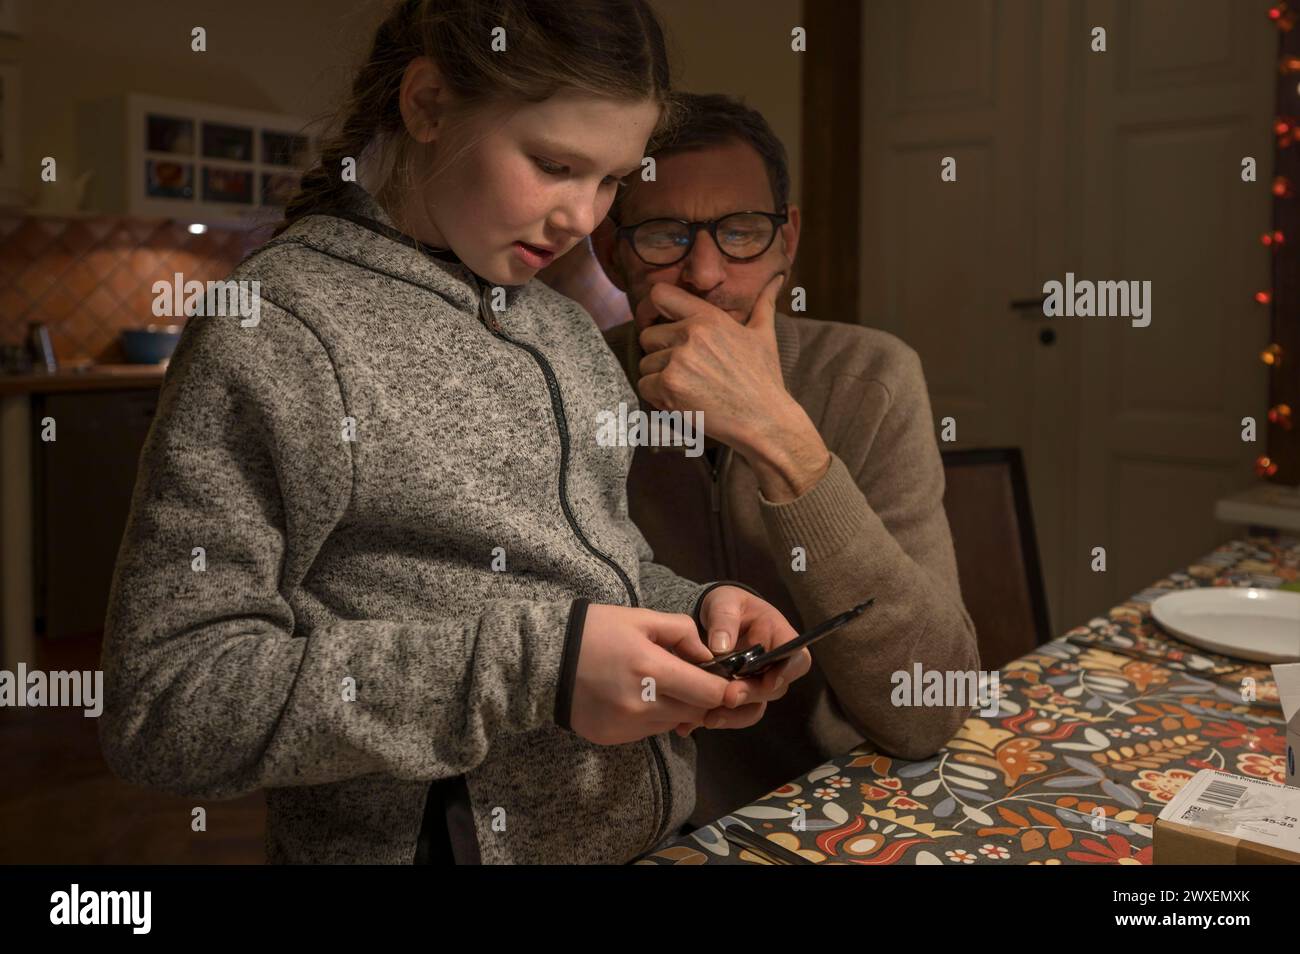 Vater und Tochter suchen etwas mit ihrem Handy, Mecklenburg-Vorpommern, Deutschland Stockfoto